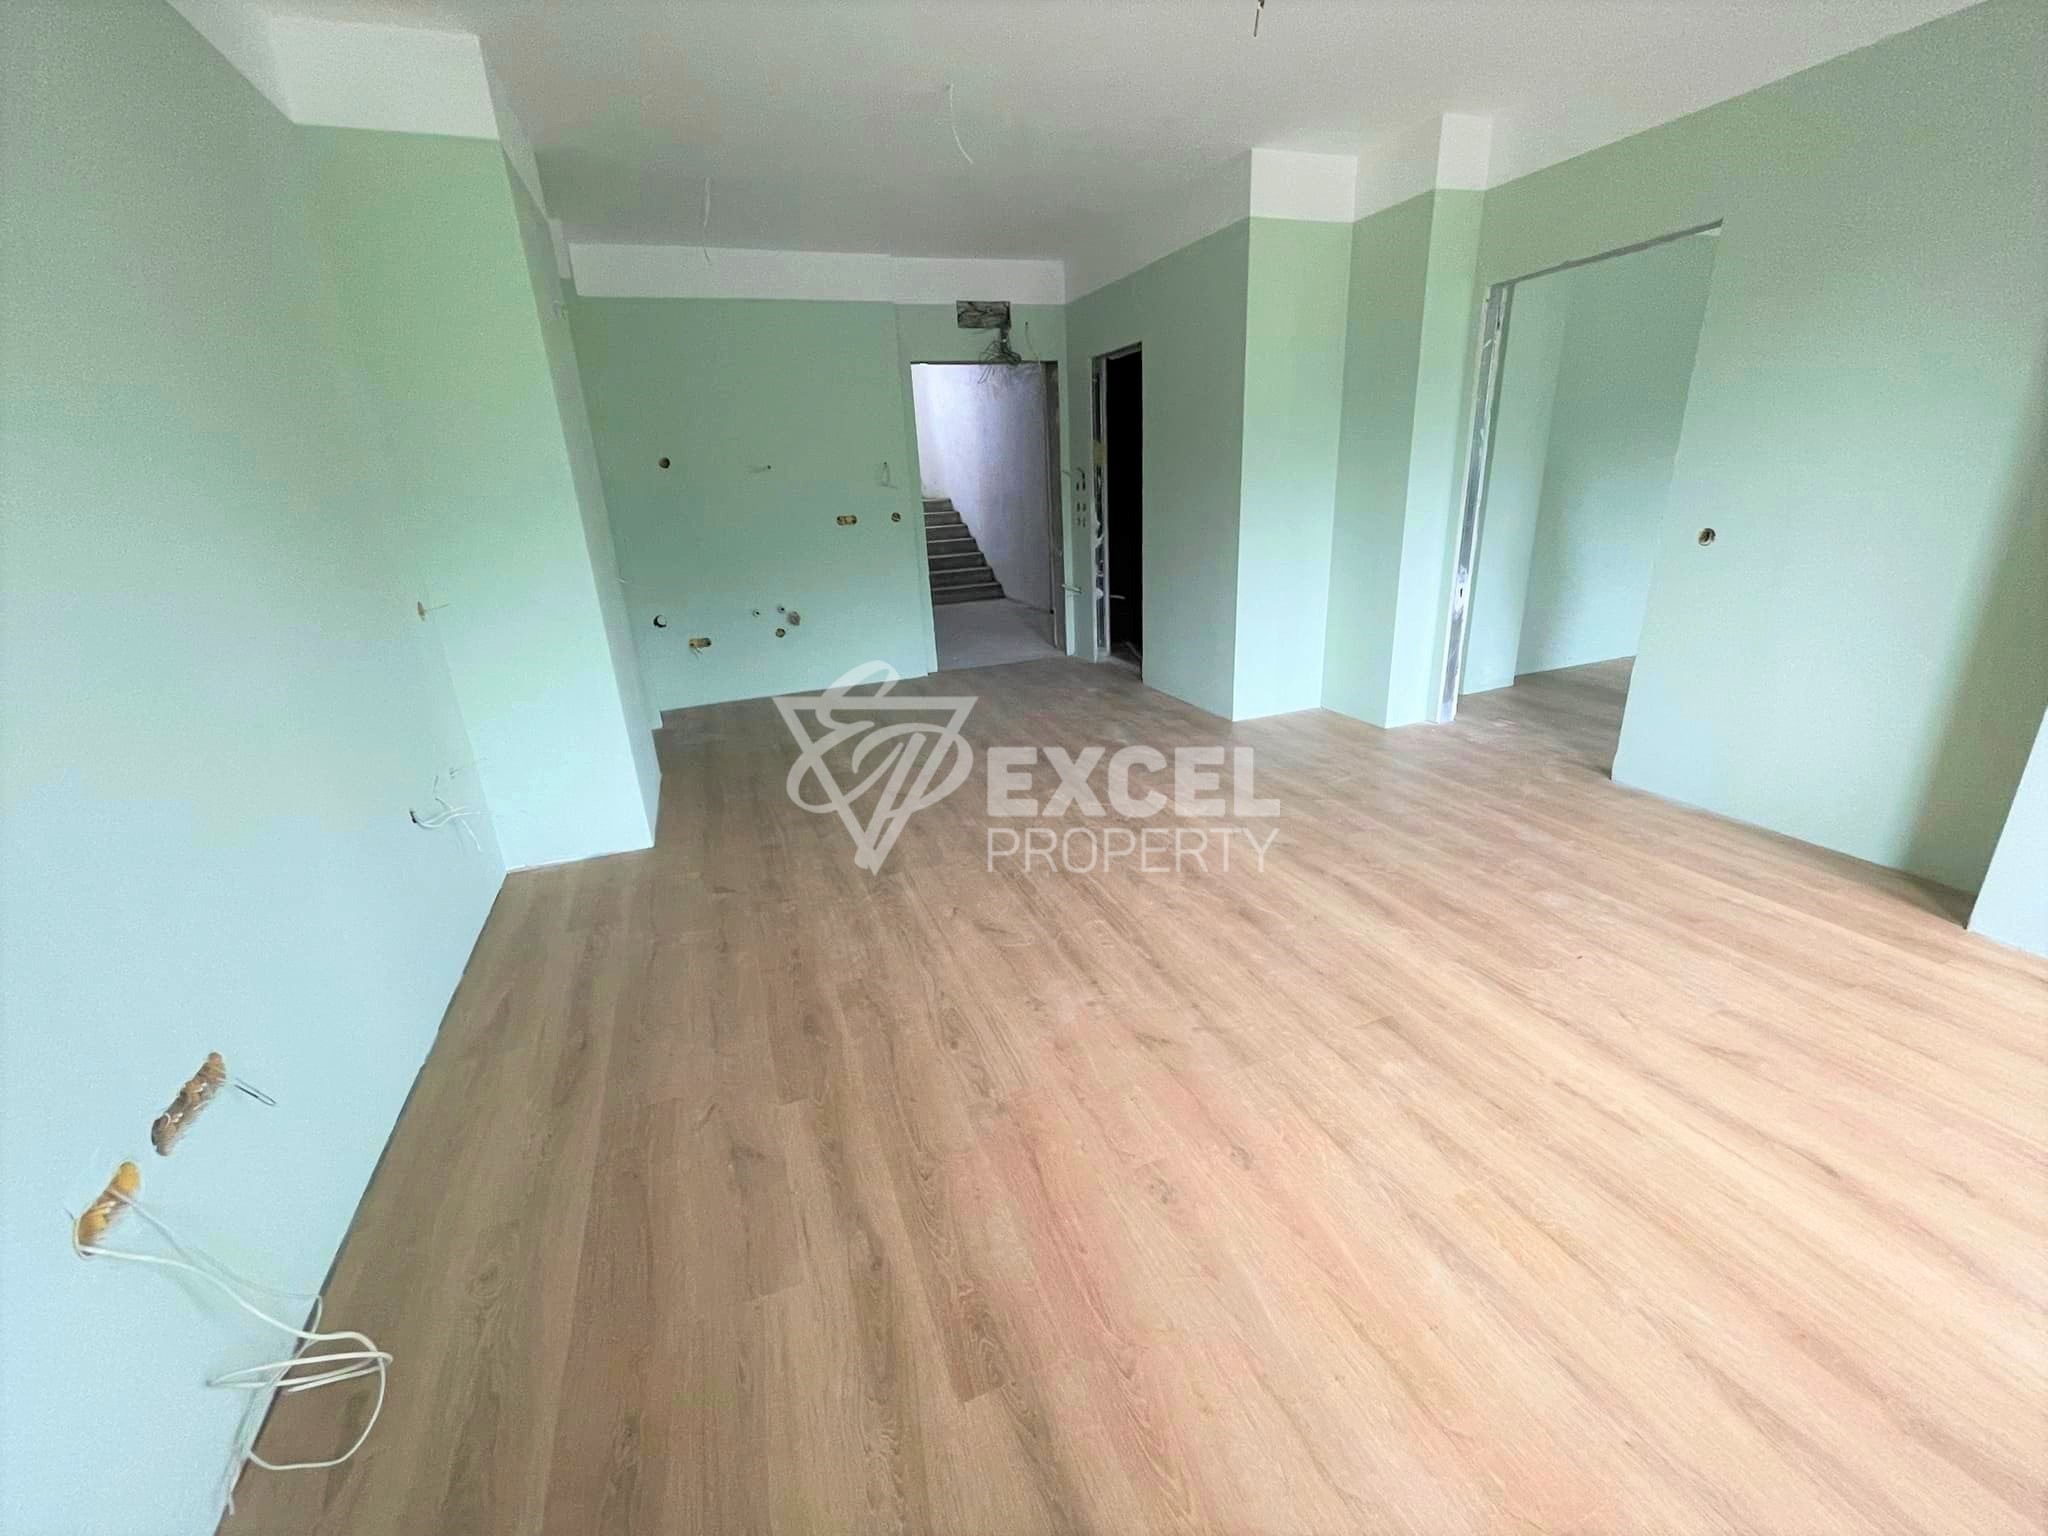 Двустаен апартамент за продажба в нова жилищна сграда, Банско